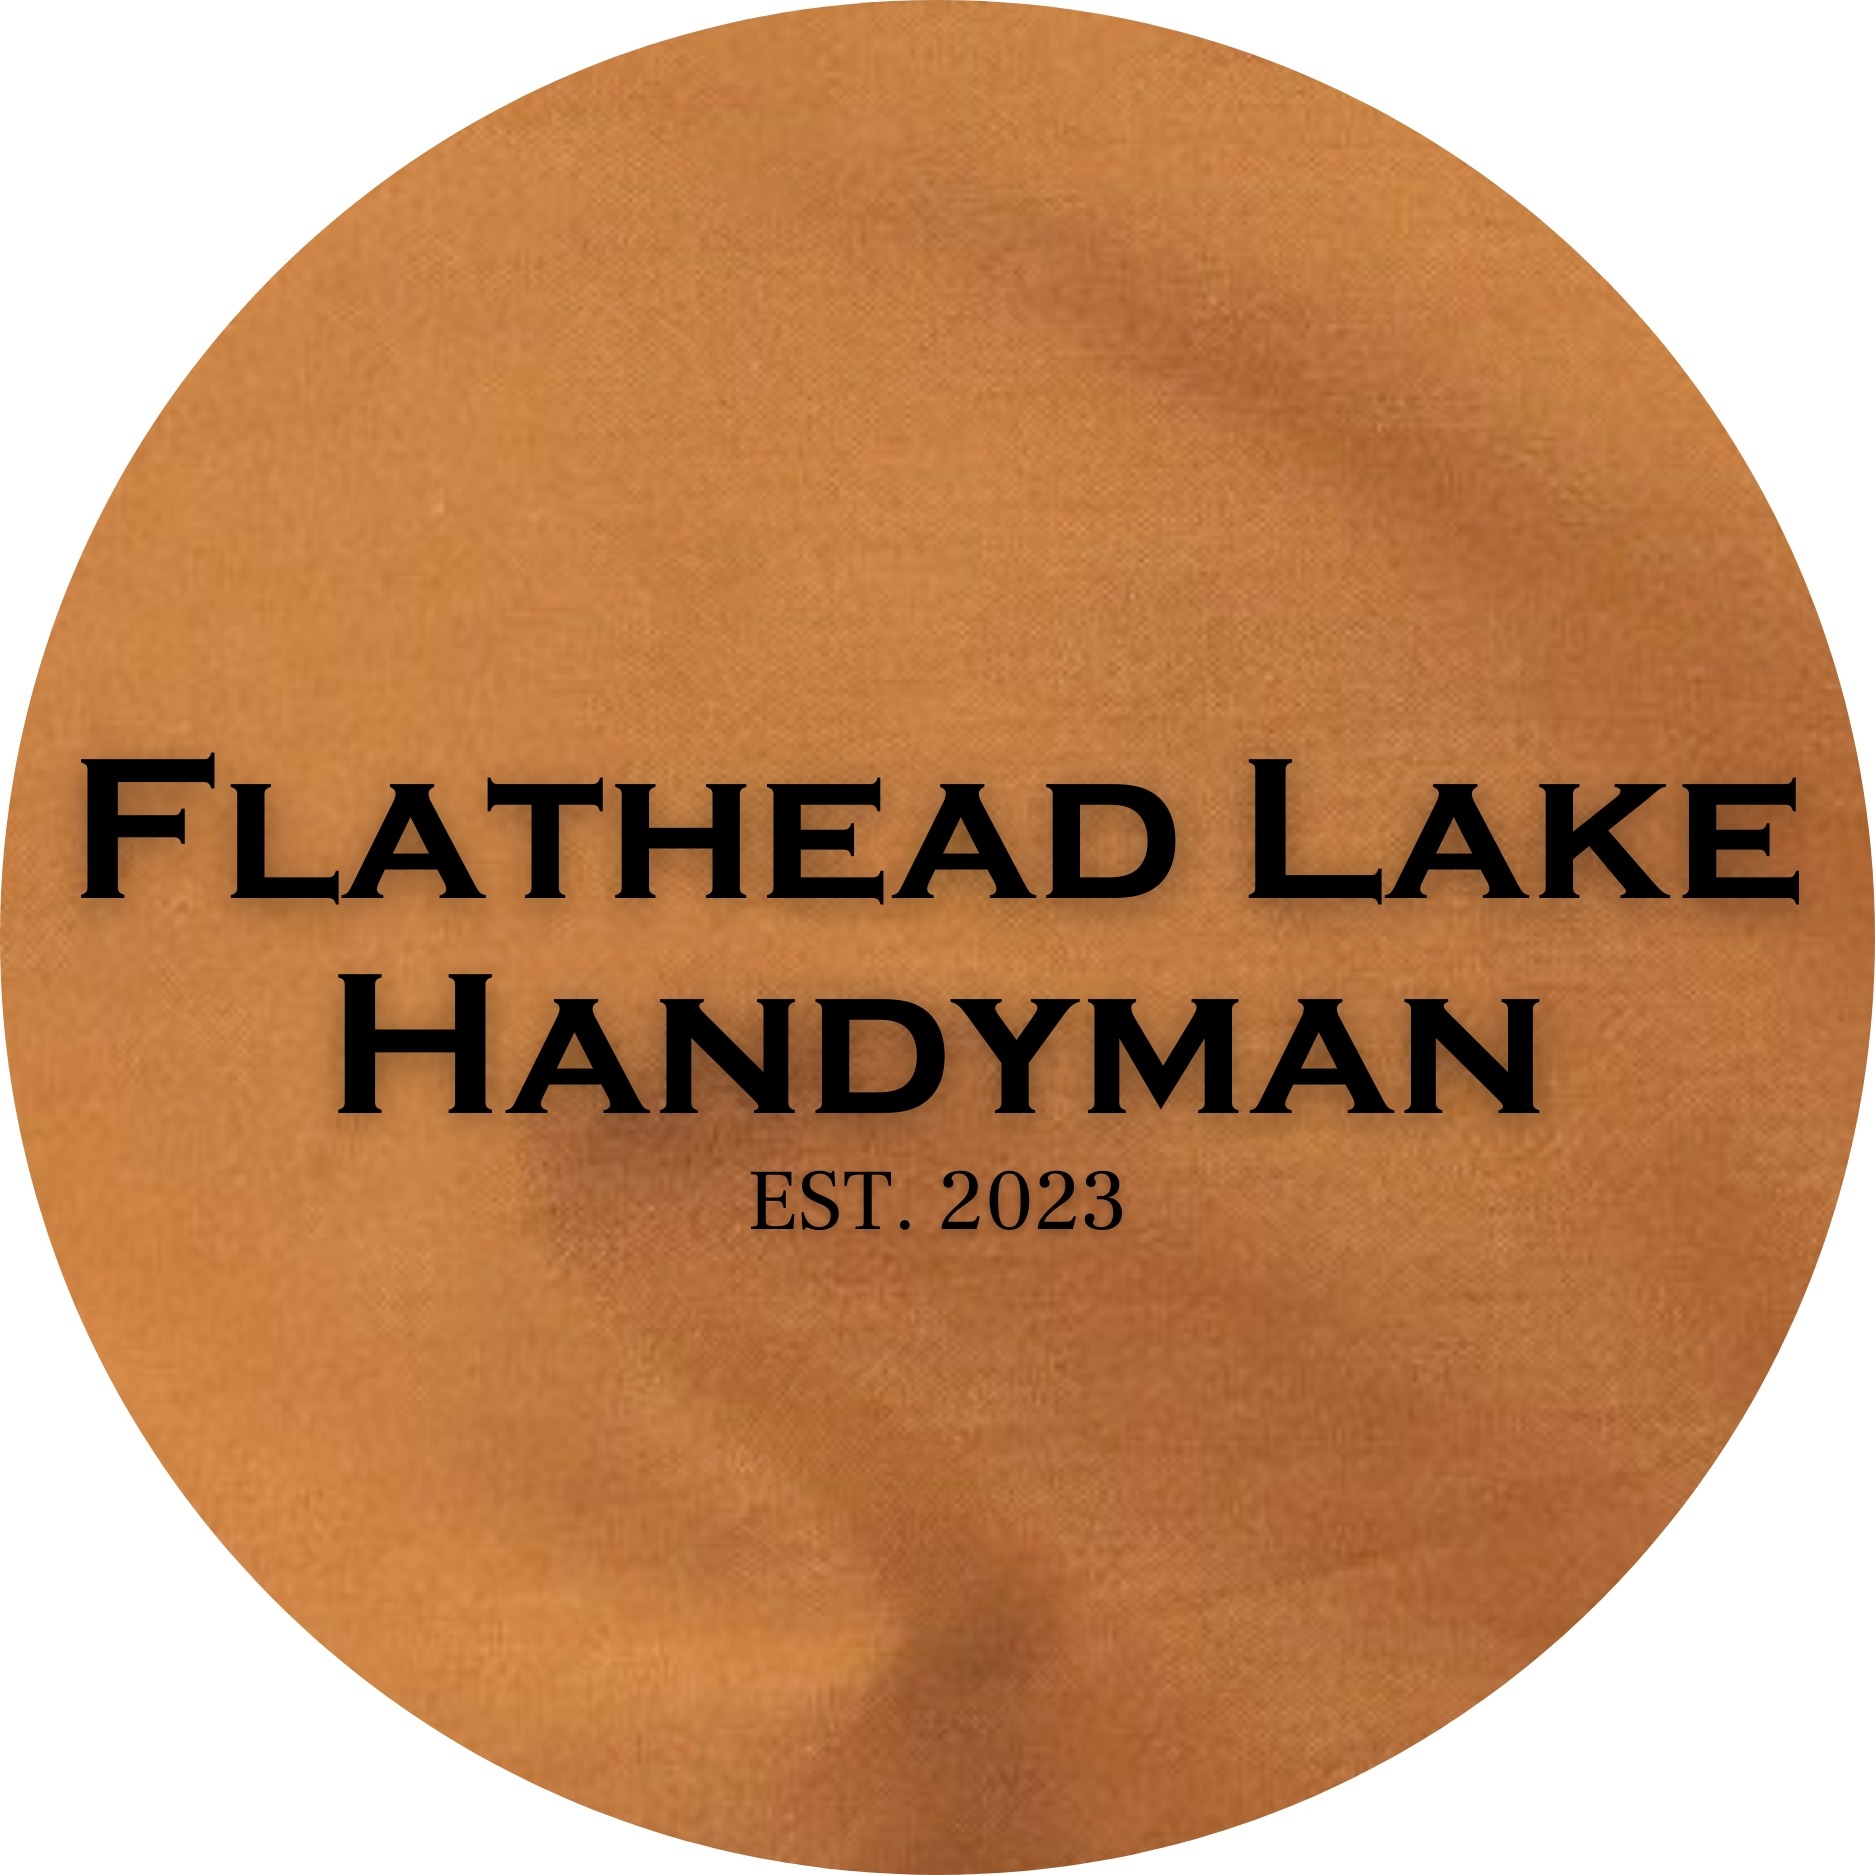 Flathead Lake Handyman